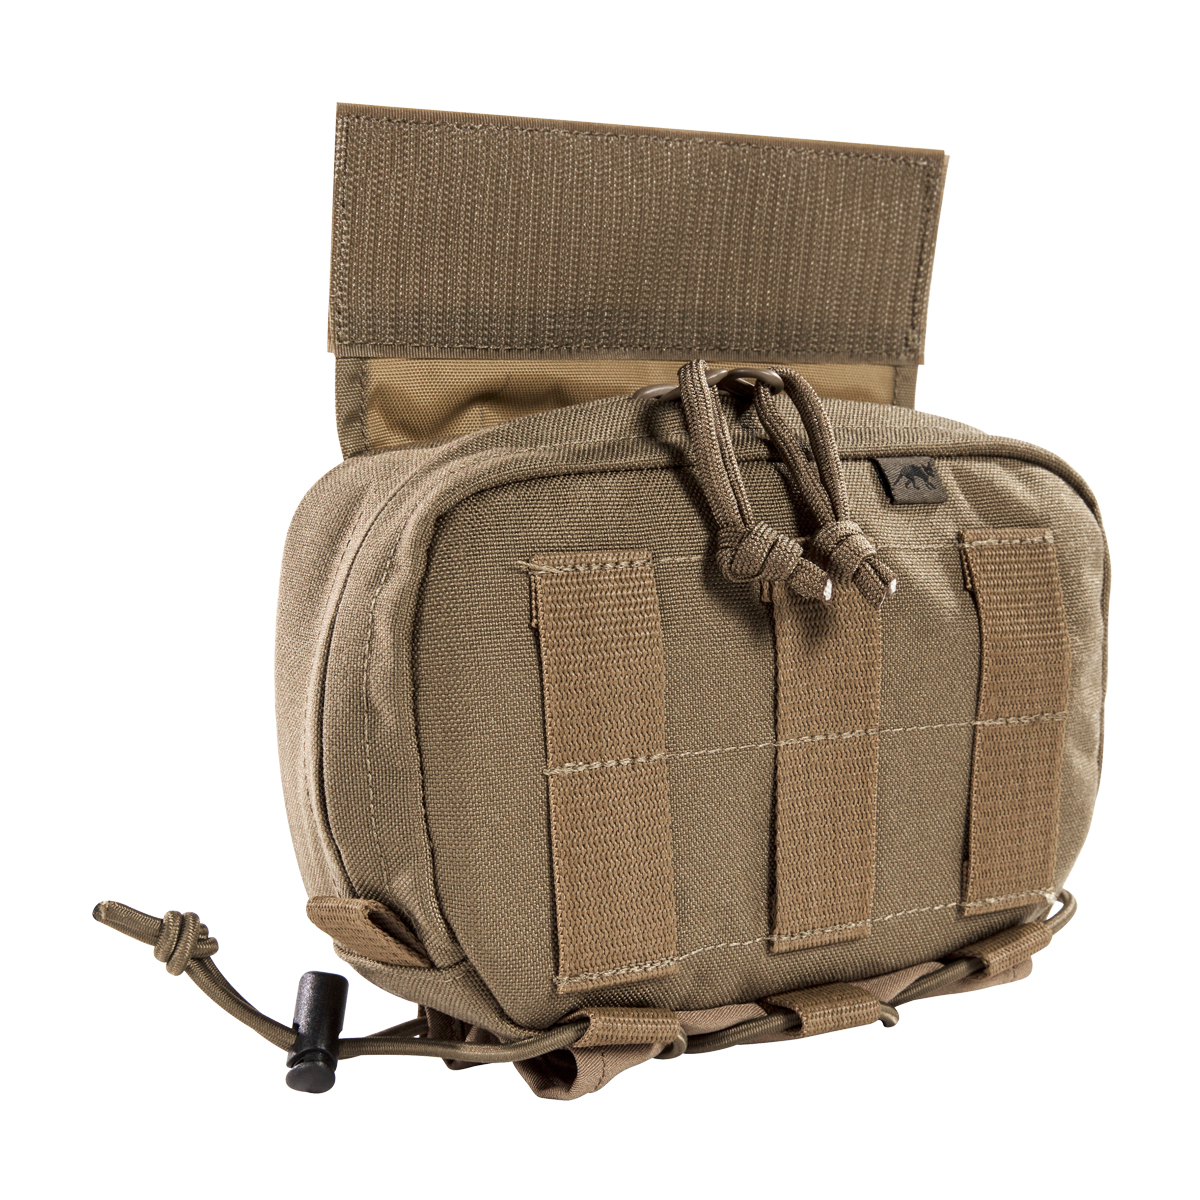 Produktbild von Tasmanian Tiger TT Tac Pouch 12, coyote braun - Zusatz-Fronttasche für Plate Carrier LC-Frontpanels (17 x 11,5 x 5 cm)